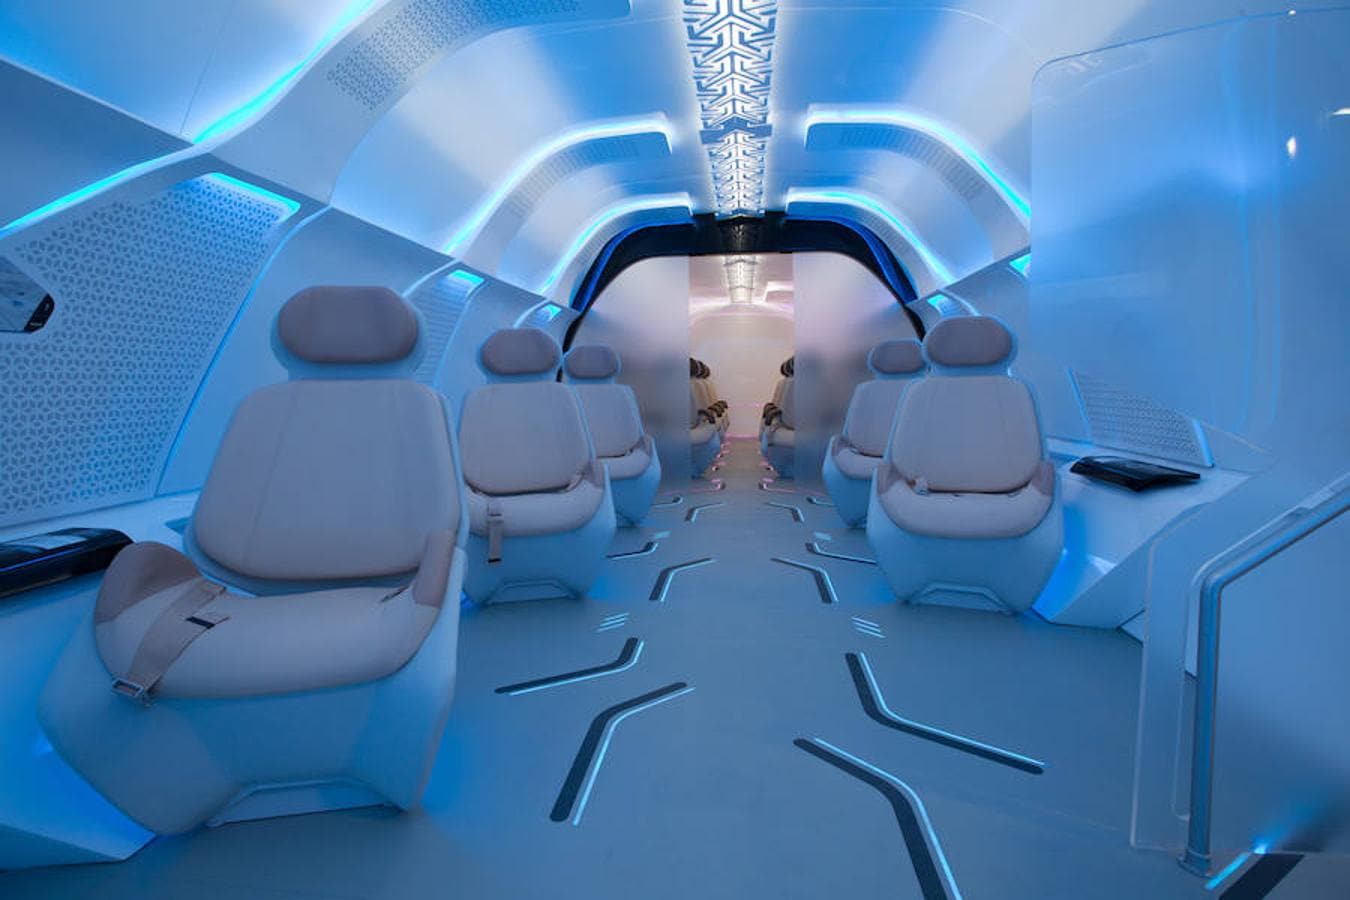 Designworks, la consultora creativa global del grupo BMW, ha trabajado junto a Virgin Hyperloop One para crear el prototipo de cápsula del futuro hyperloop de Dubai.